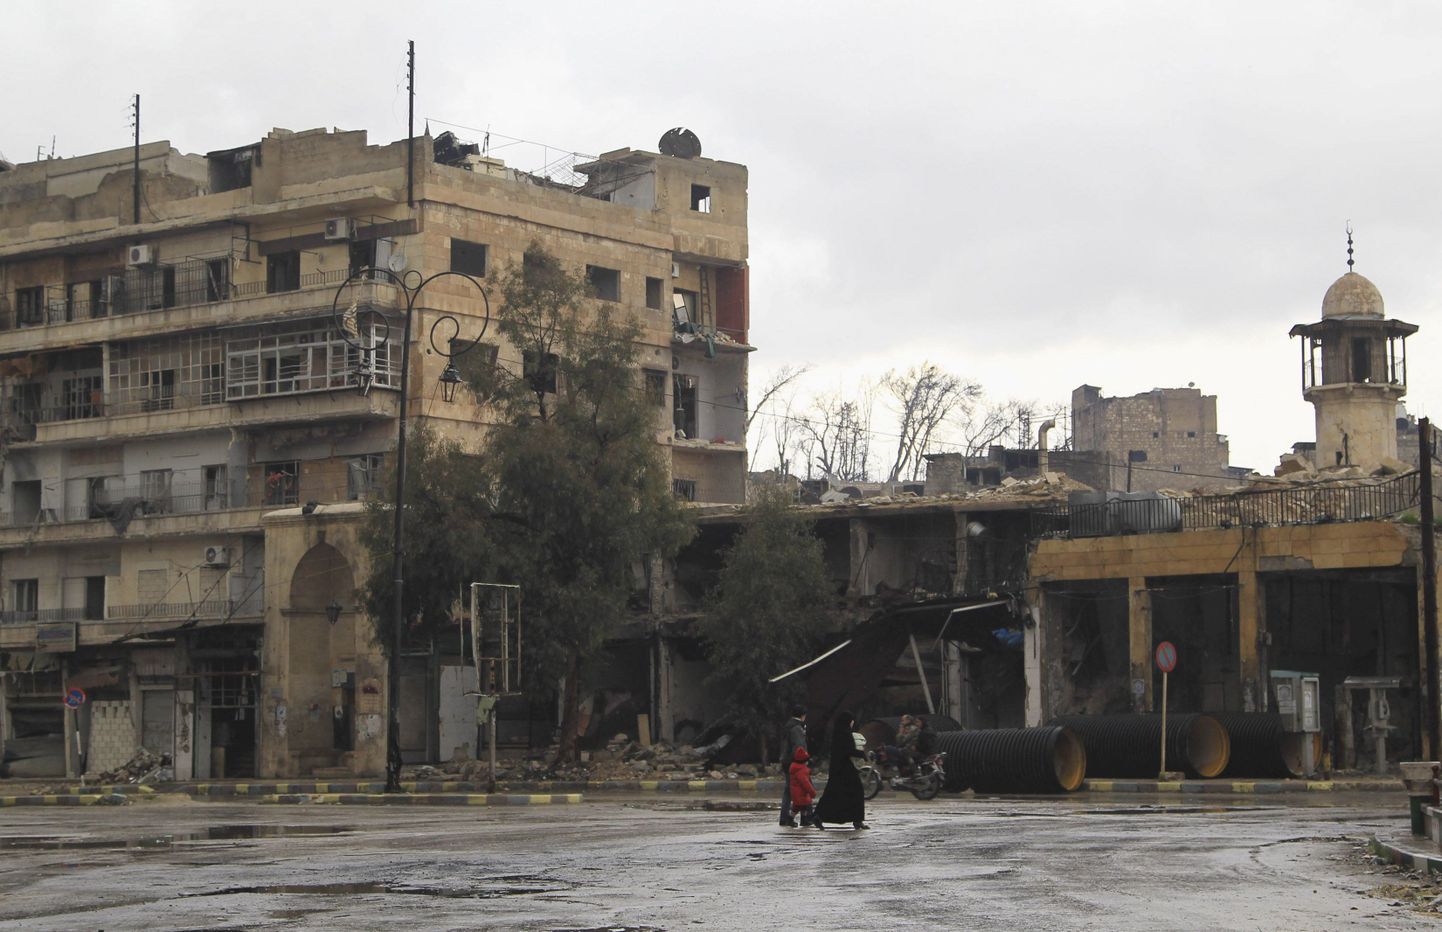 Tsiviilisikud inimtühjal tänaval Aleppos (Süüria).